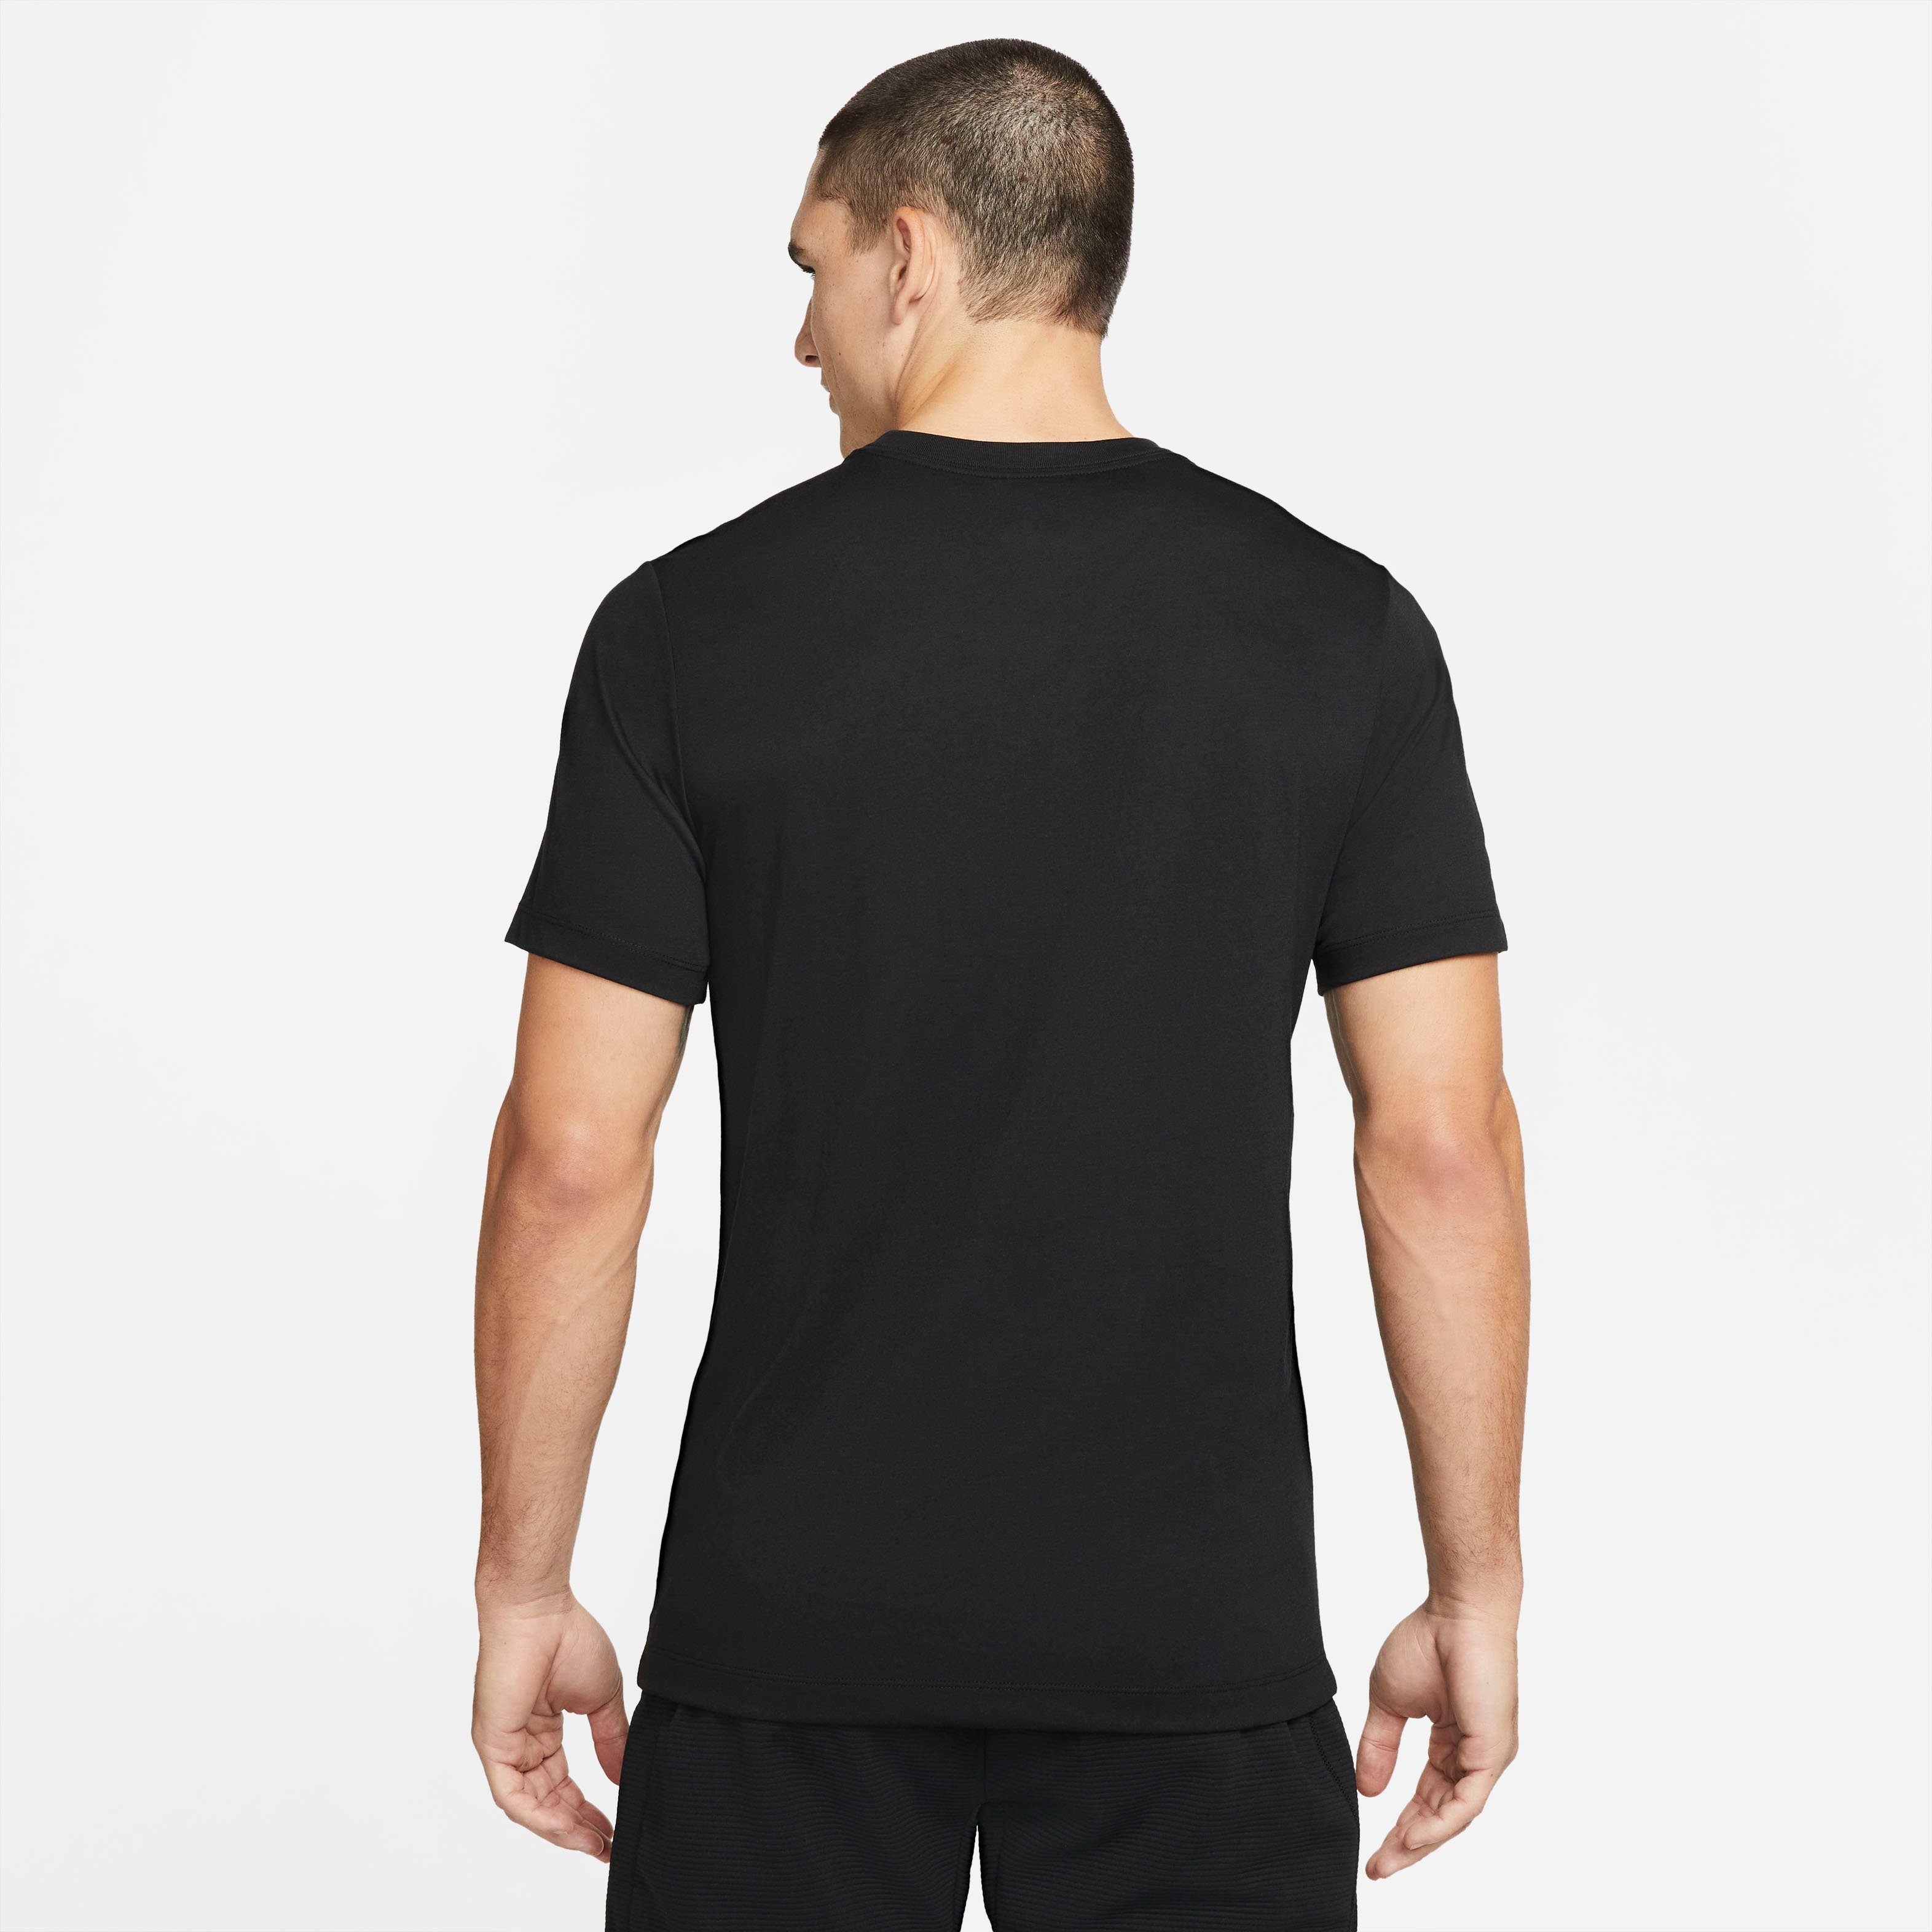 T-Shirt Men's BLACK Pro Nike Training Trainingsshirt Dri-FIT